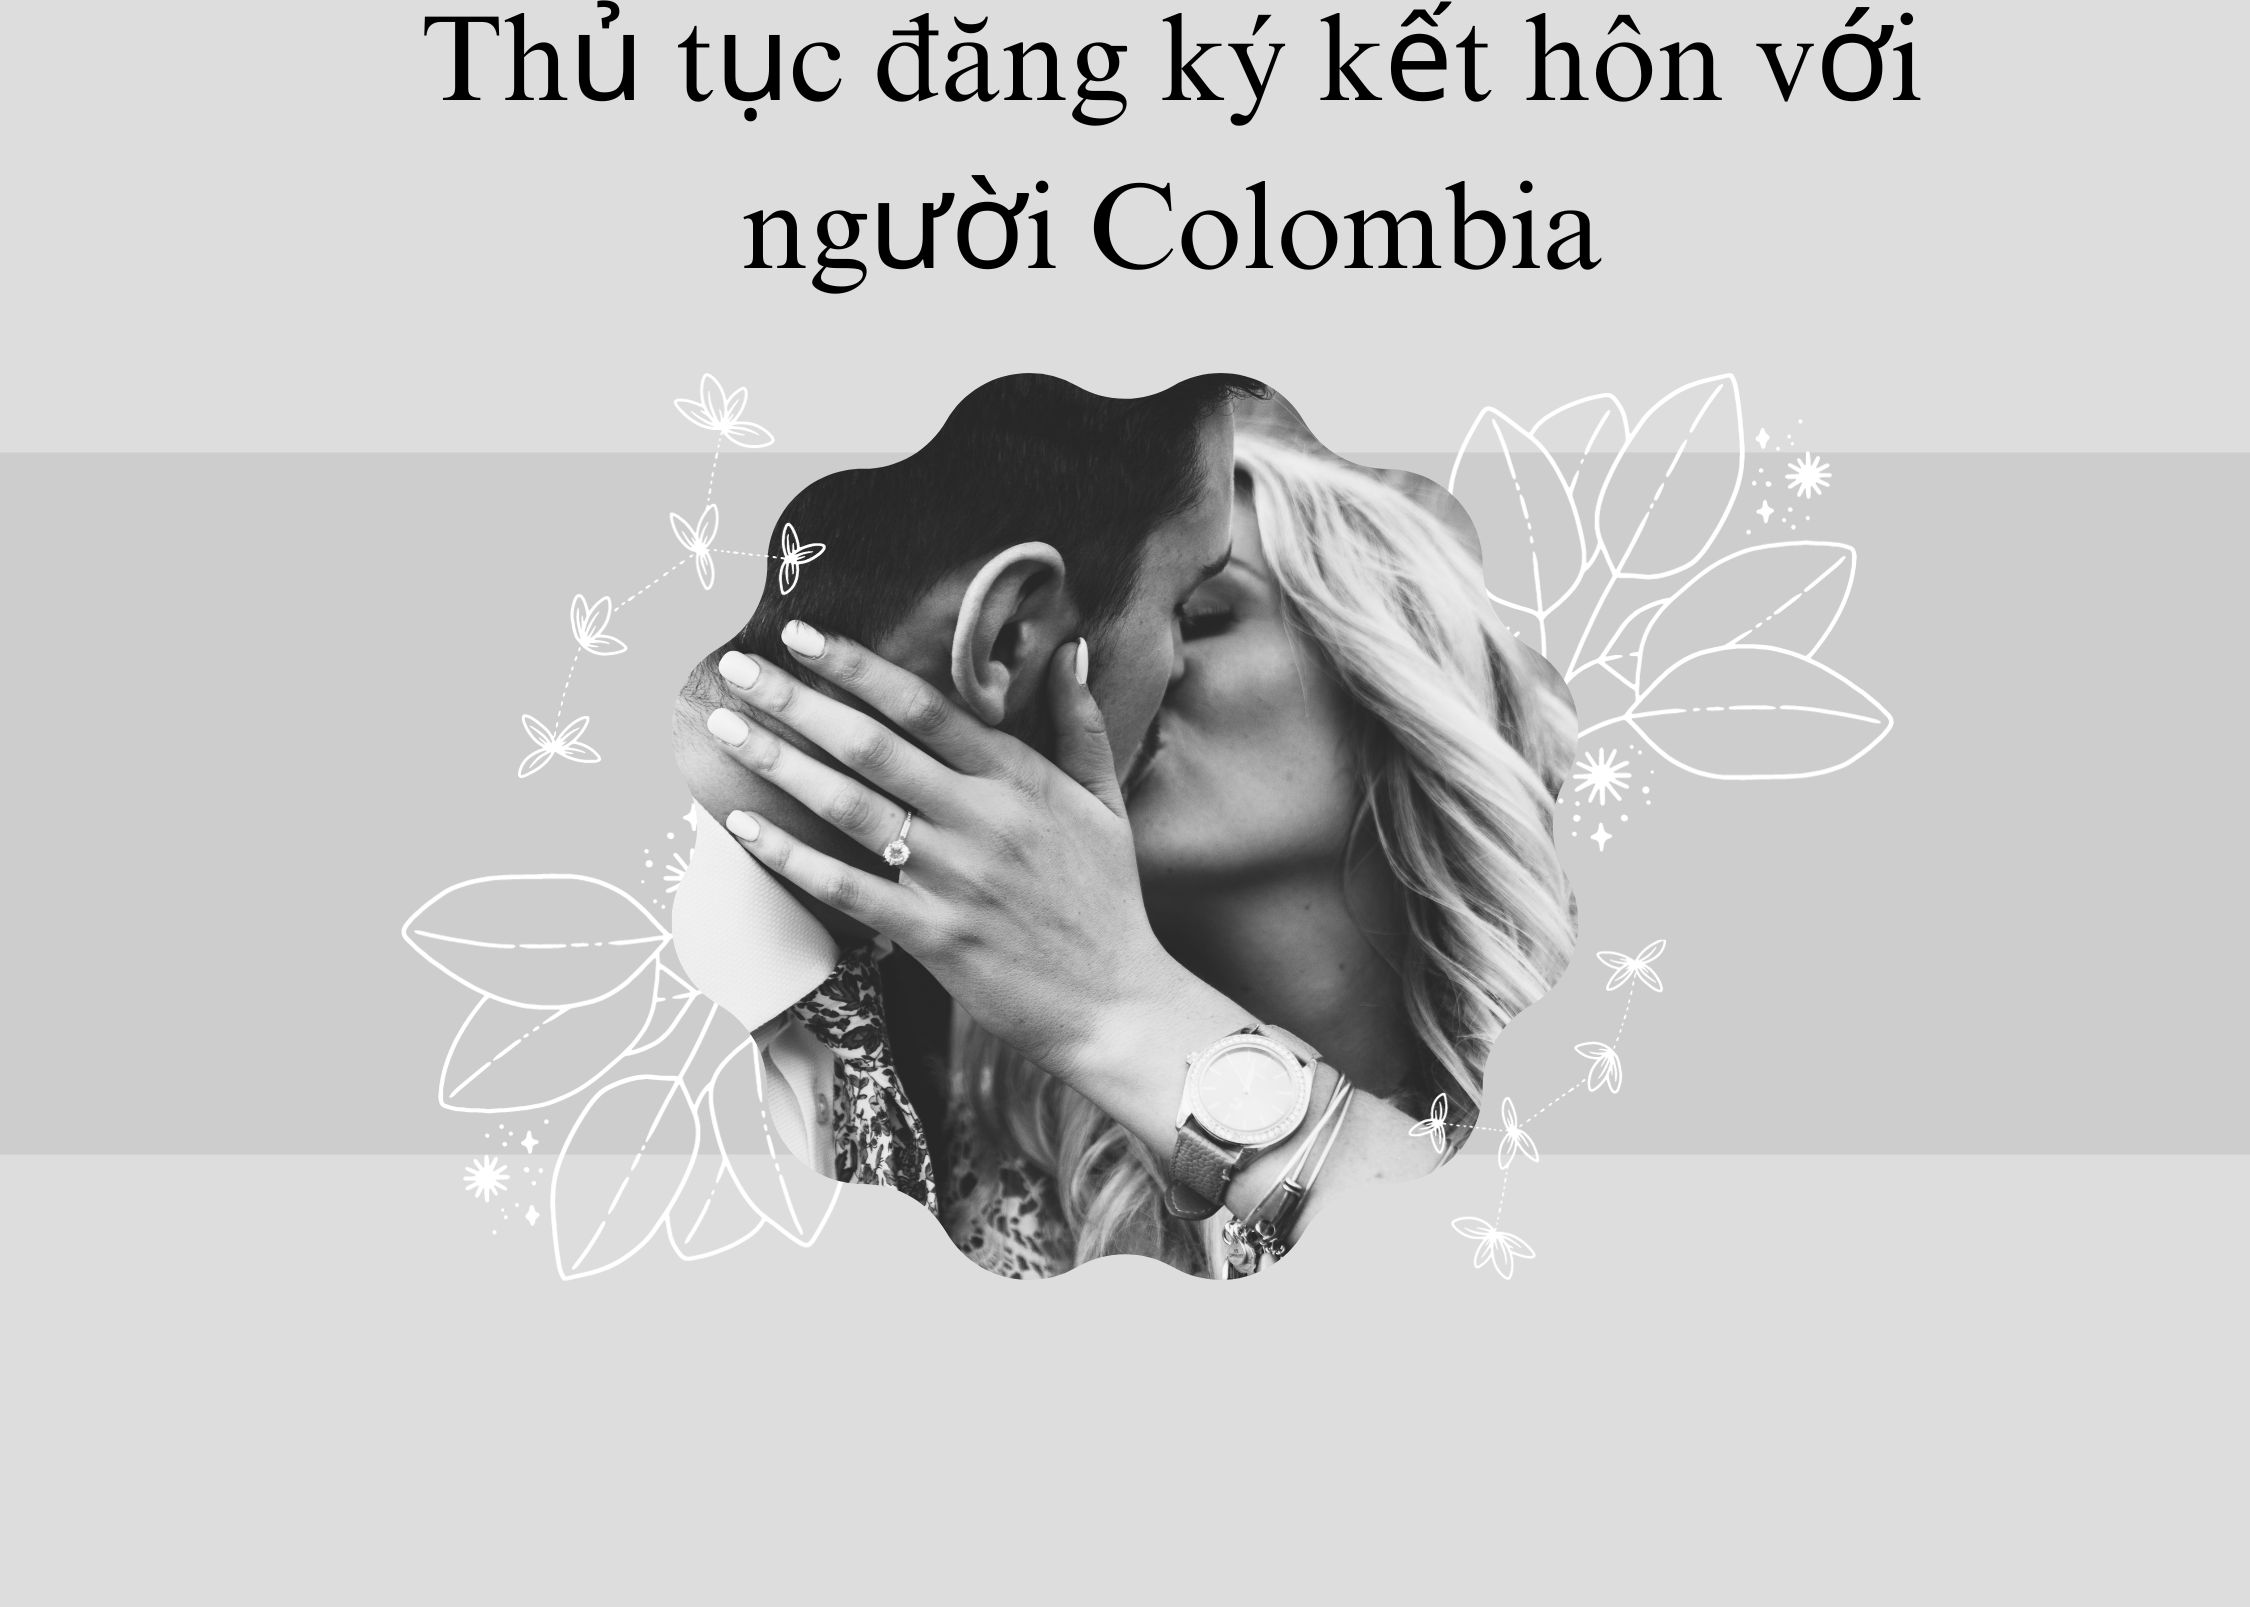 Thủ tục đăng ký kết hôn với người Colombia